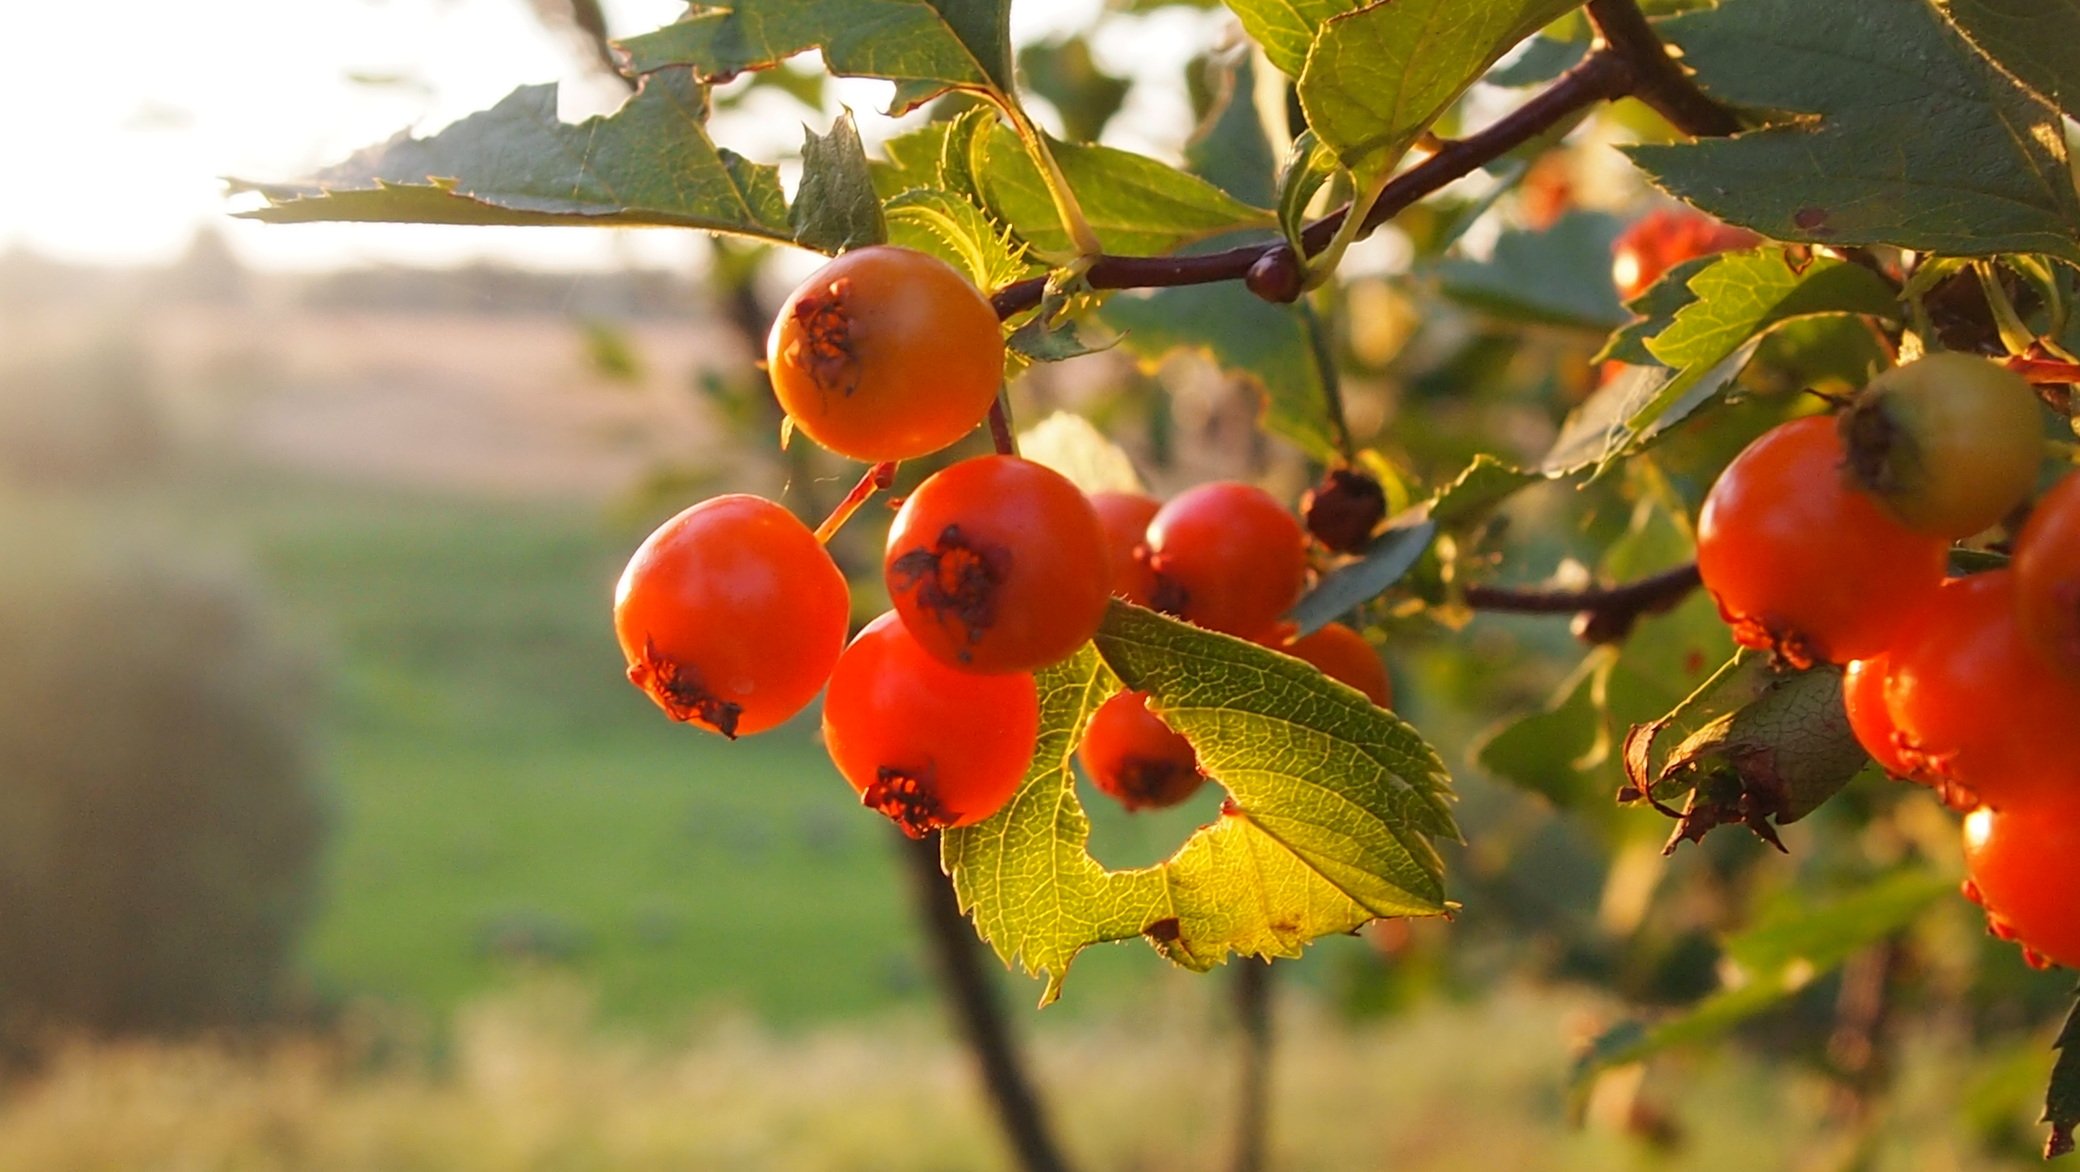 боярышник дерево фото с ягодами